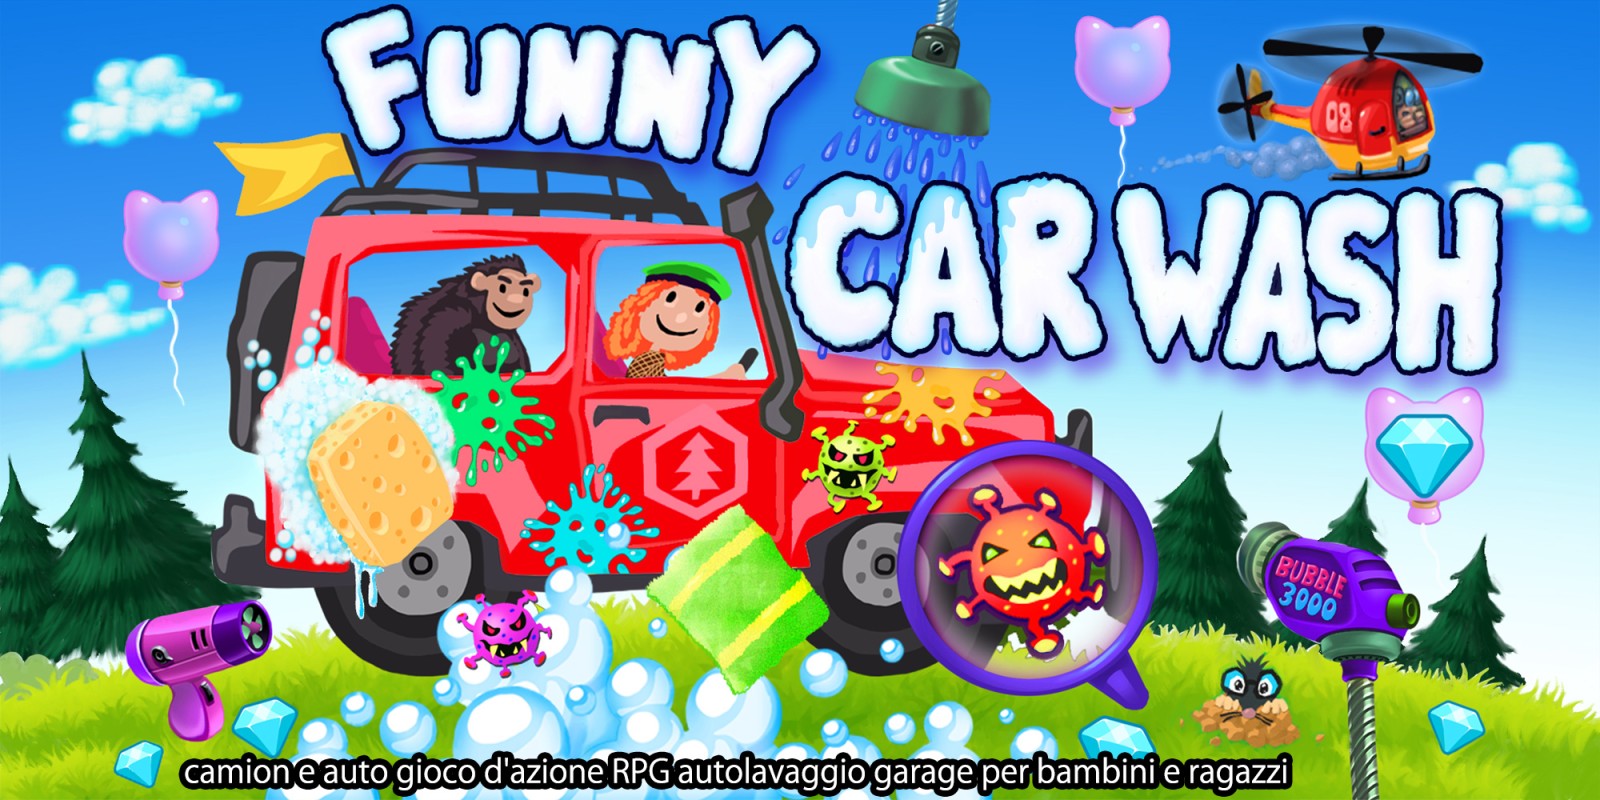 Funny Car Wash - camion e auto gioco d'azione RPG autolavaggio garage per bambini e ragazzi